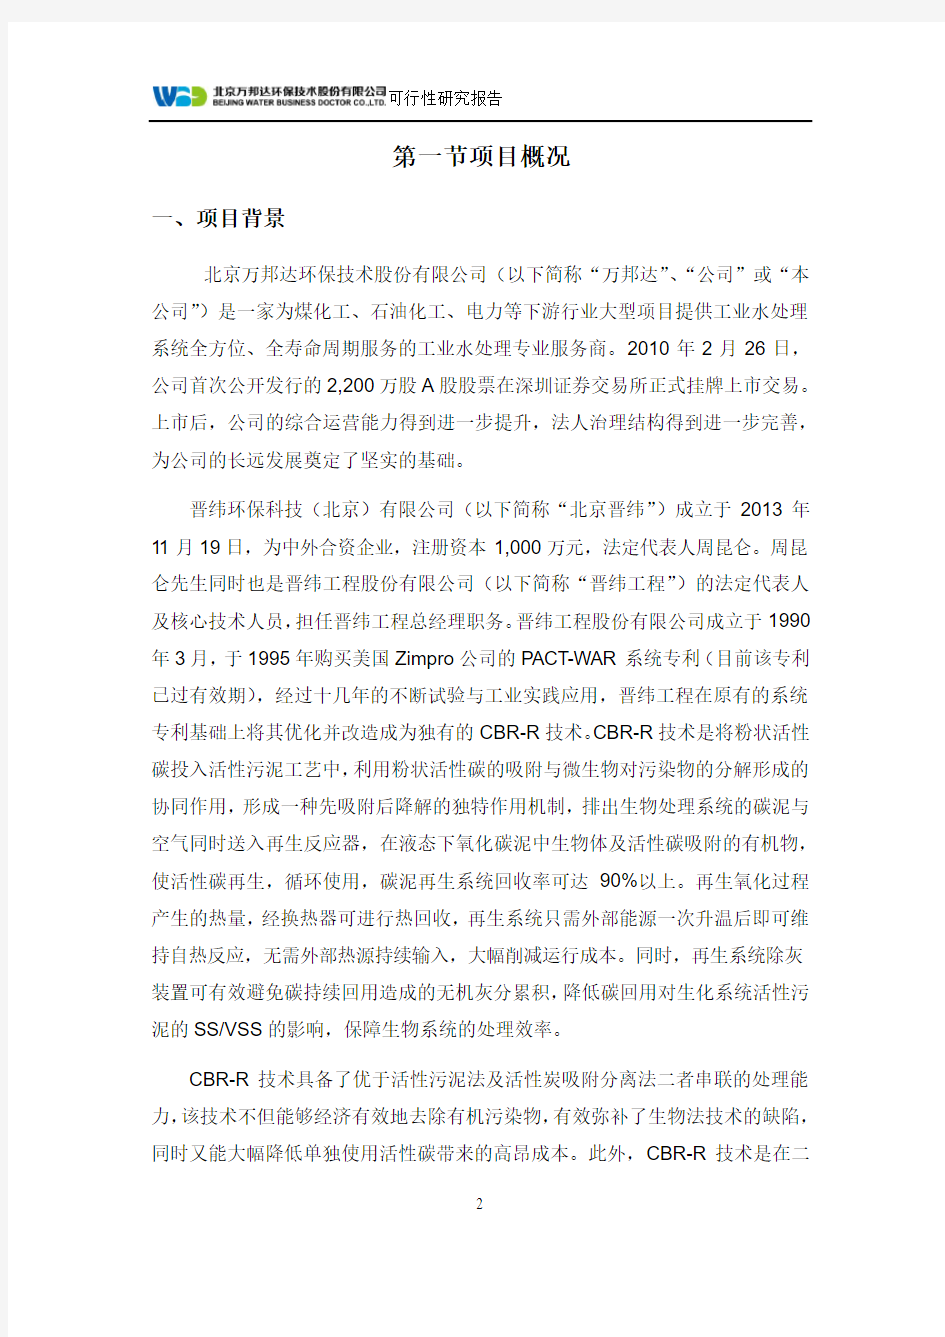 关于增资控股晋纬环保科技(北京)有限公司可行性研究报告